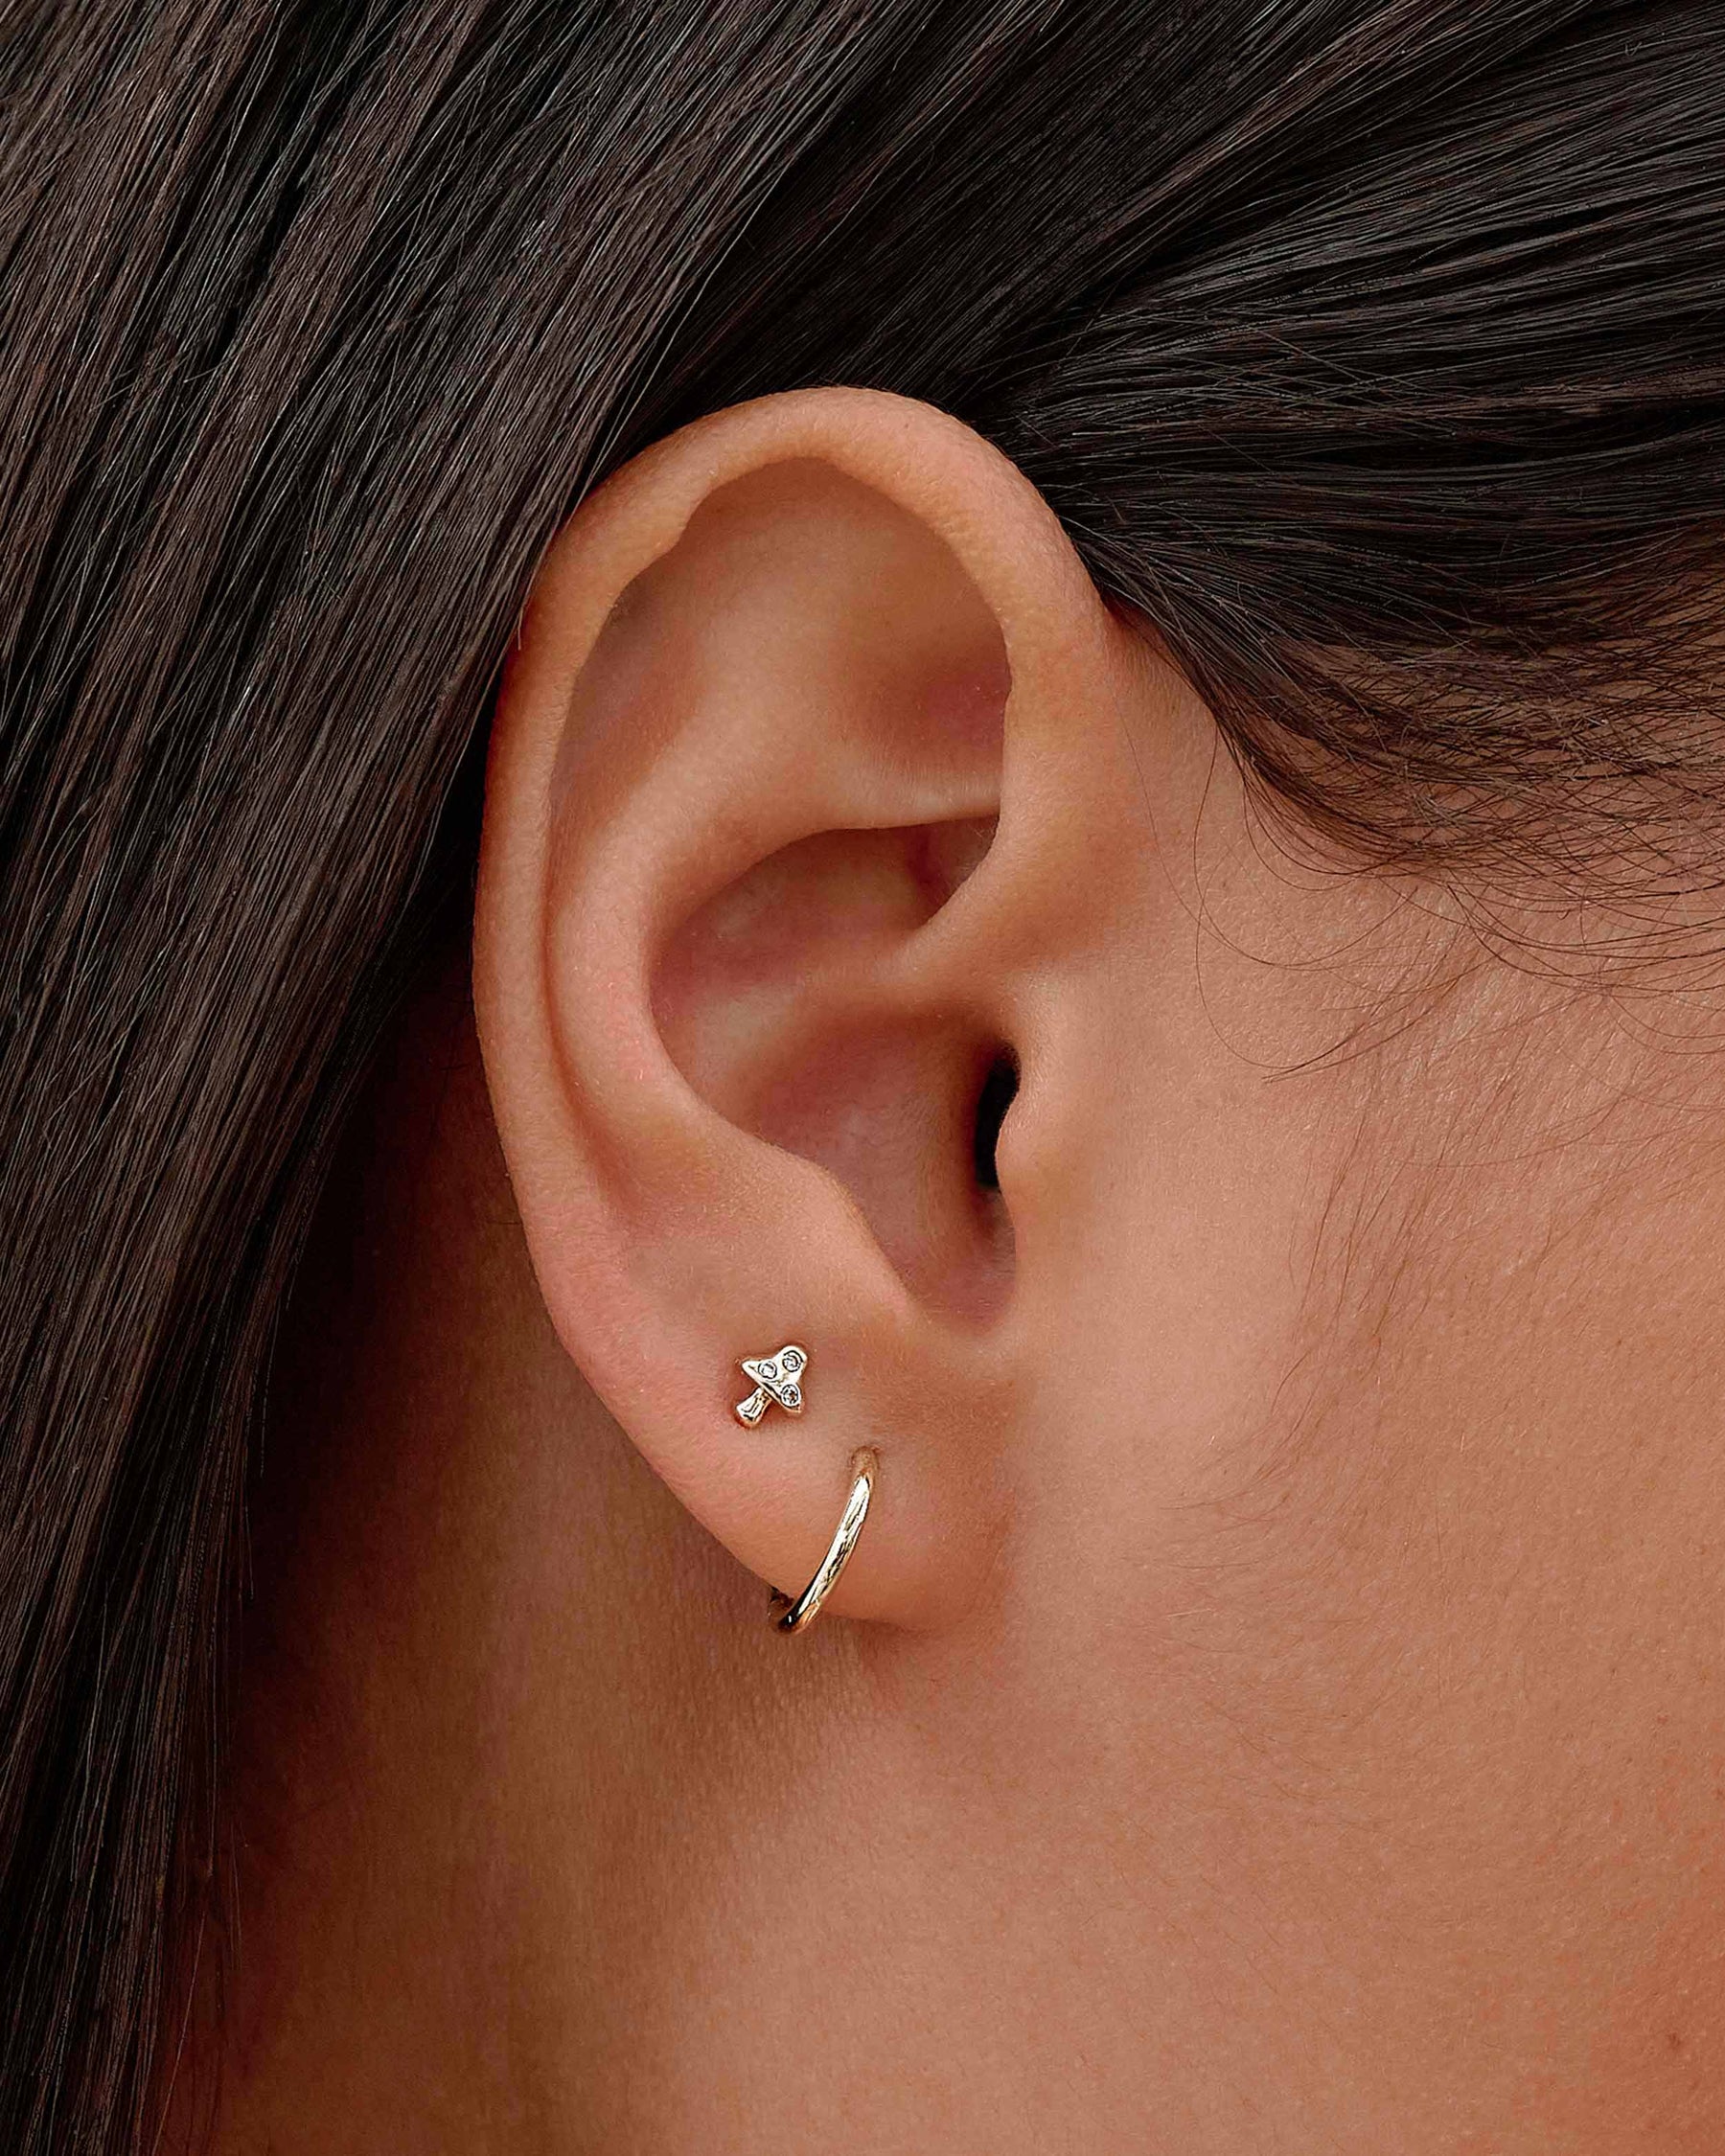 Second Hole Teeny Star Earring | Gold ear jacket, Diamond earrings studs,  Tiny stud earrings